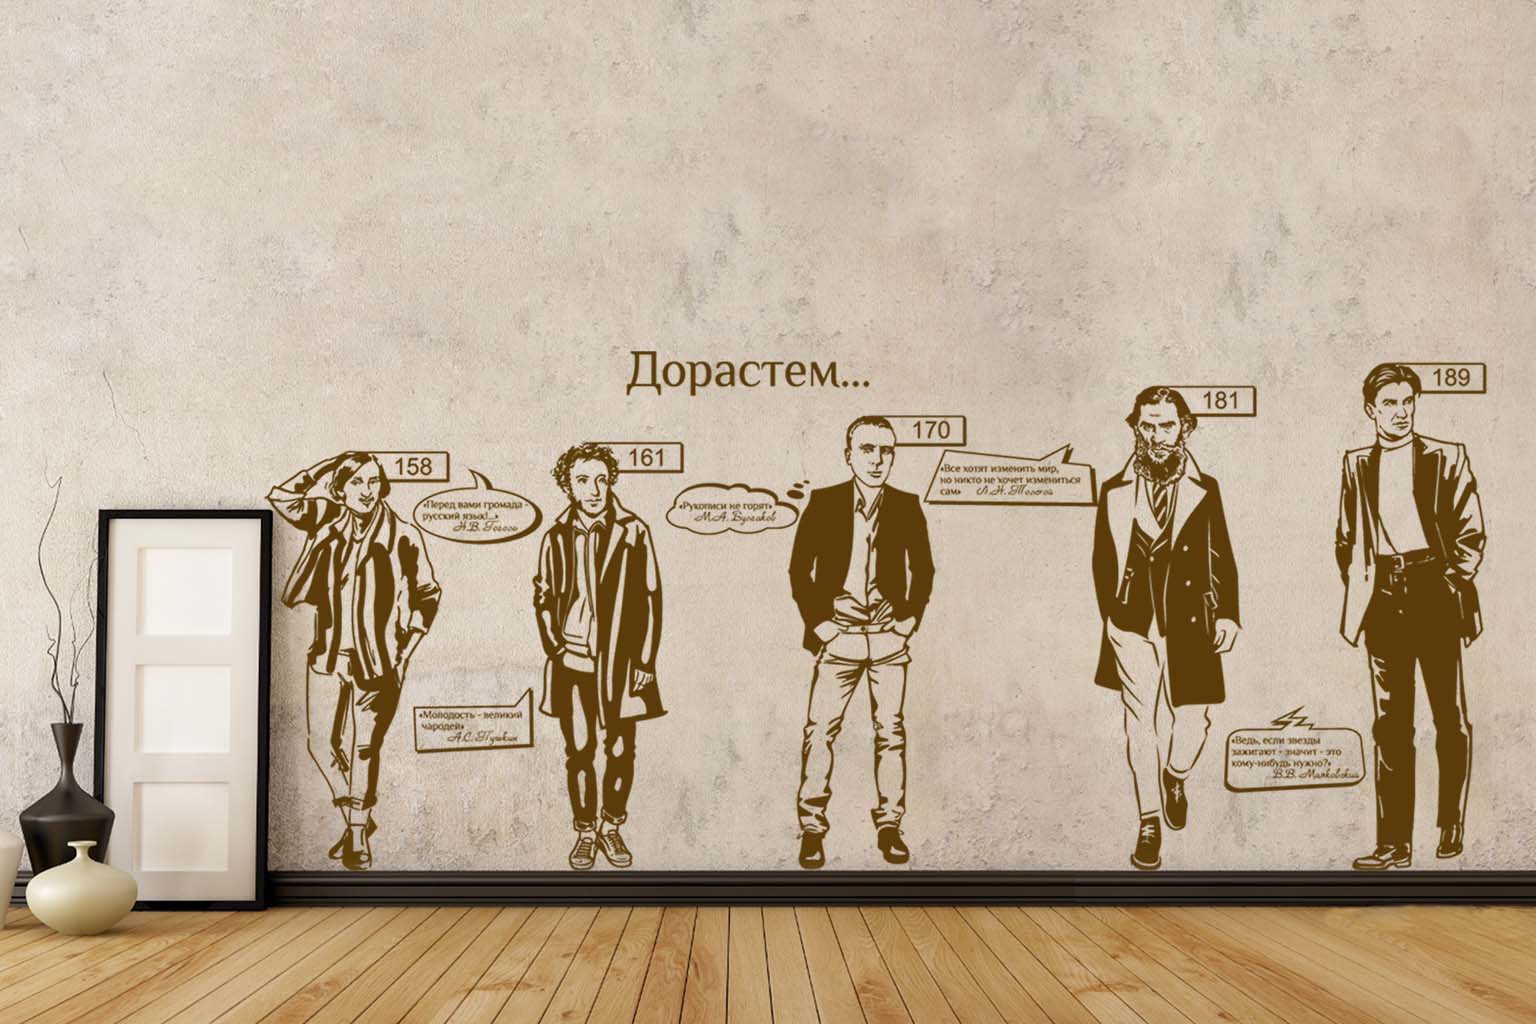 Виниловая наклейка на стену Дорастем - ростомер (русские писатели) купить